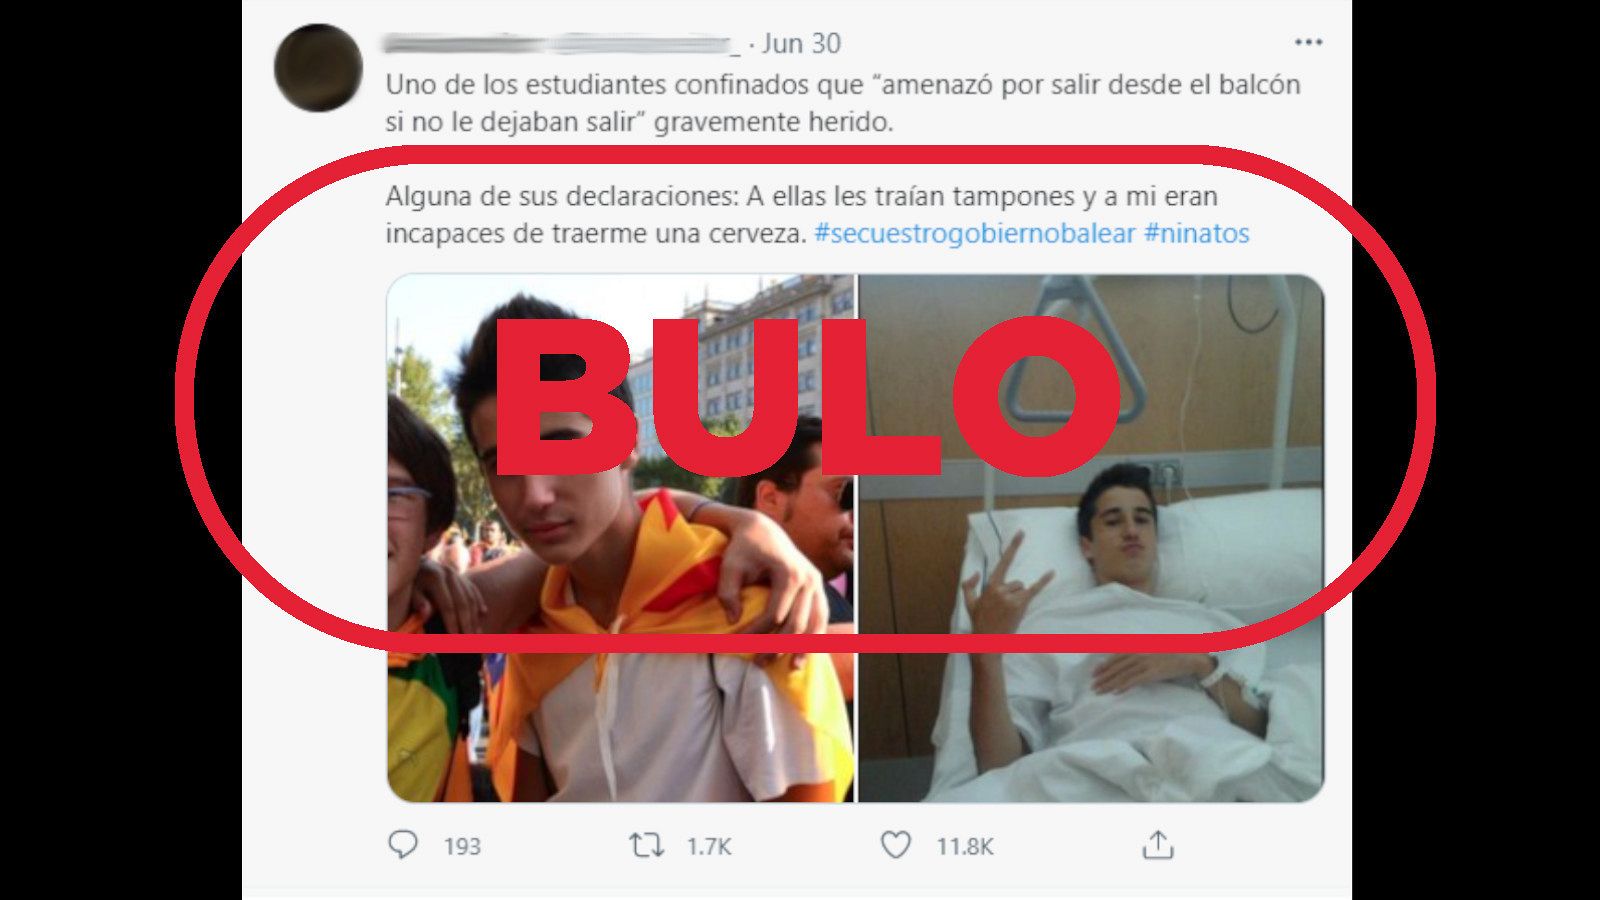 Tuit falso sobre un estudiante confinado y herido en Mallorca con el sello de bulo.